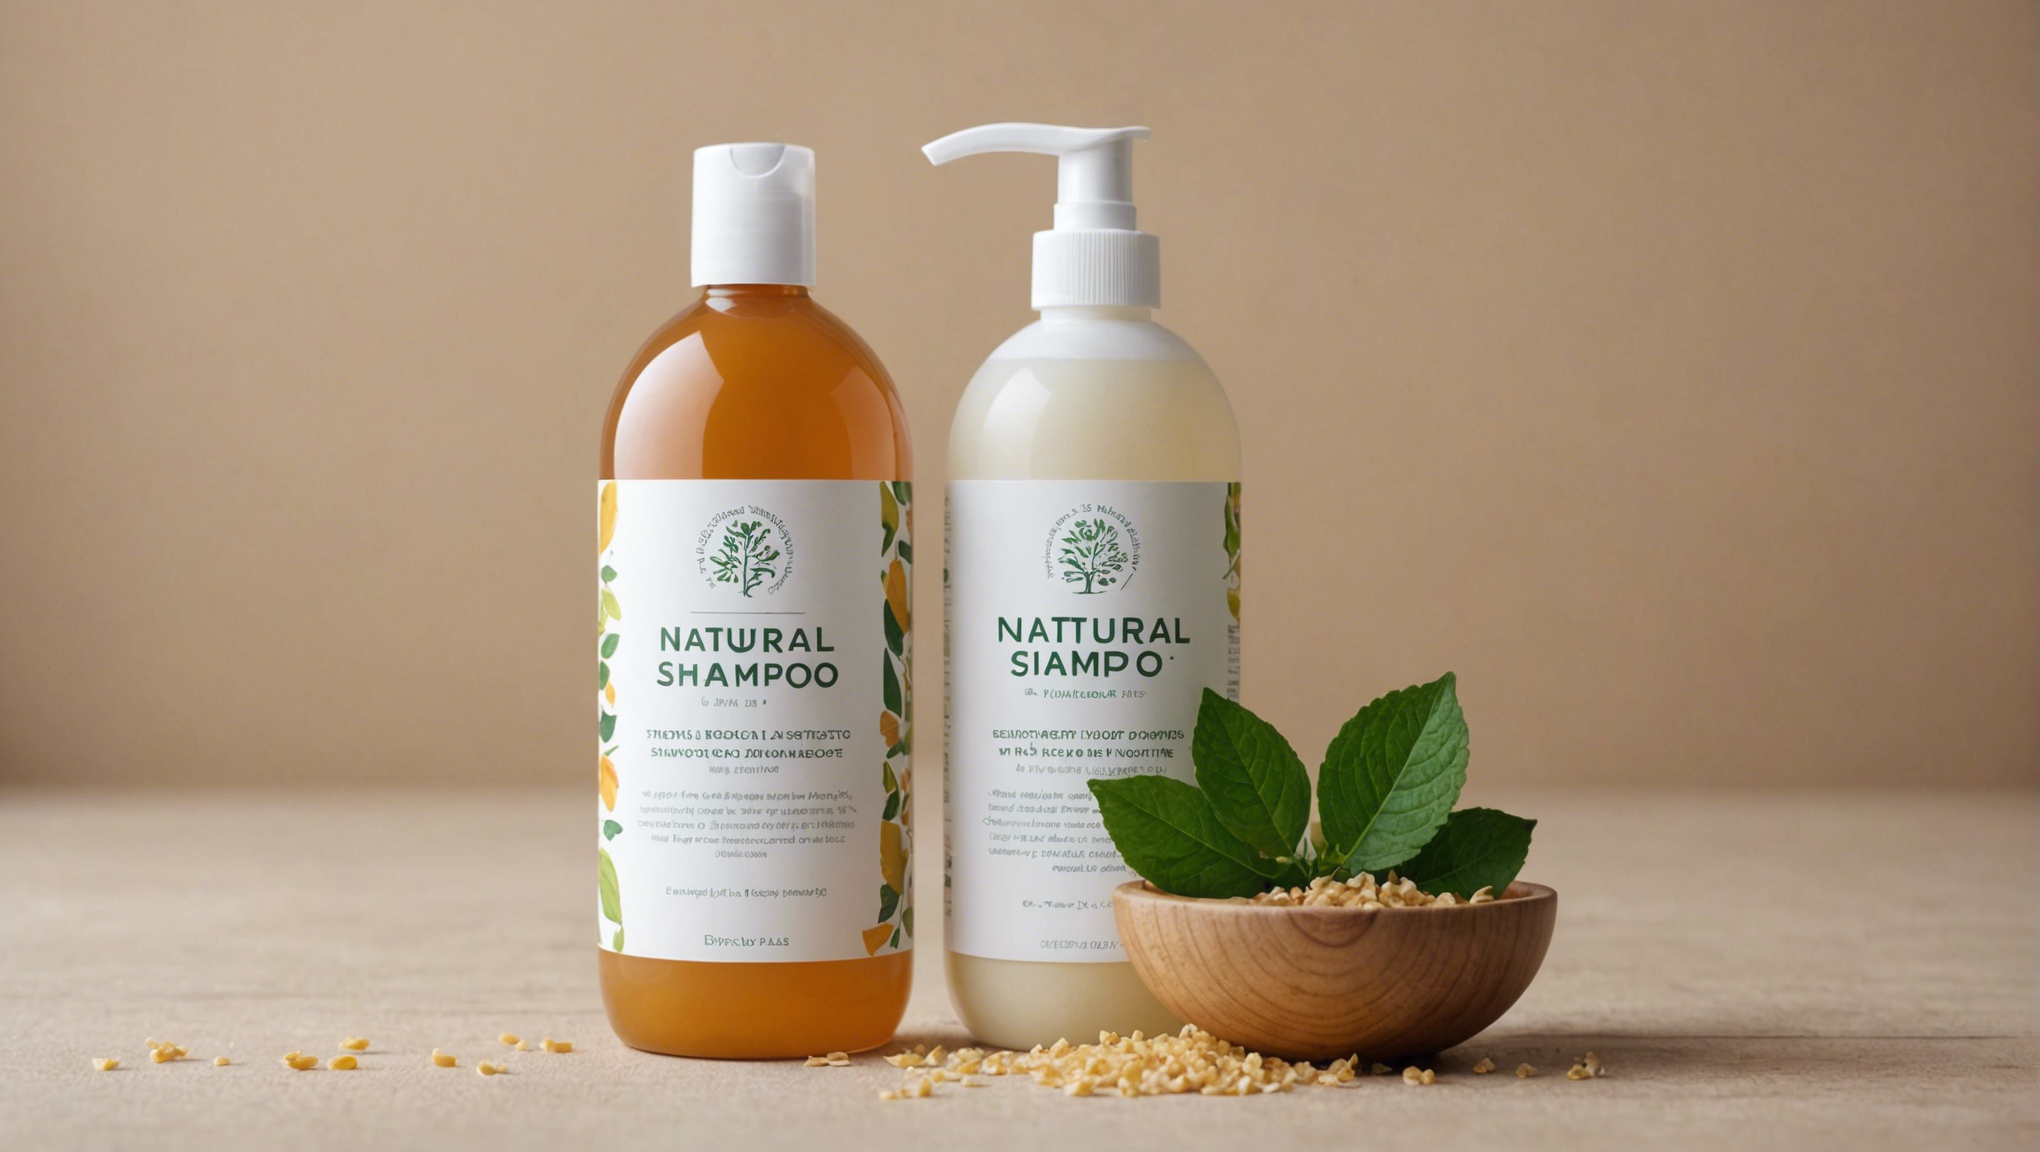 découvrez l'importance du shampoing naturel dans votre routine capillaire pour des cheveux en pleine santé.